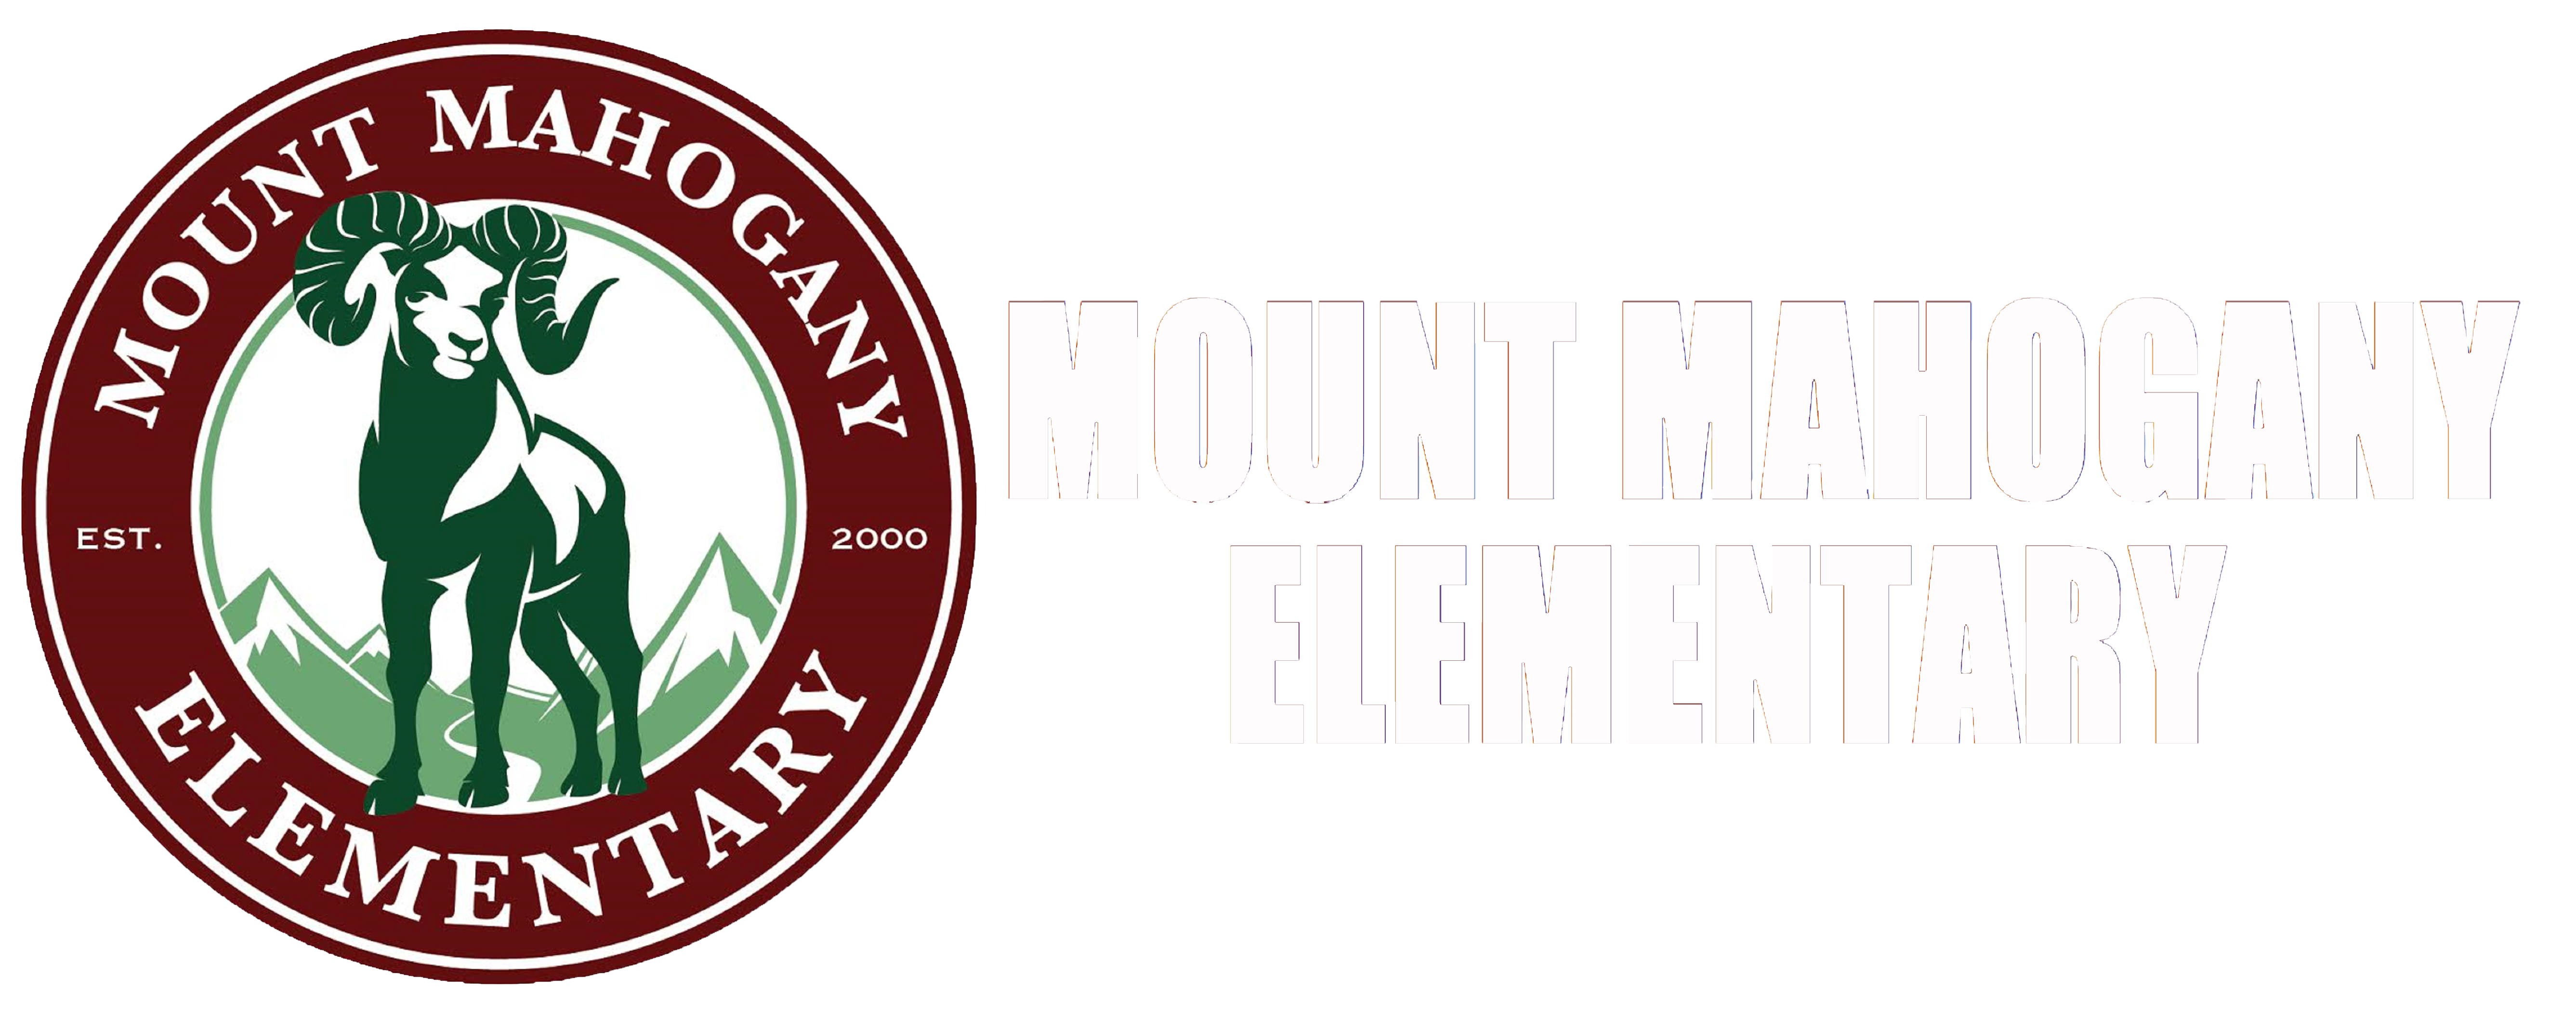 Mount Mahogany Elementary